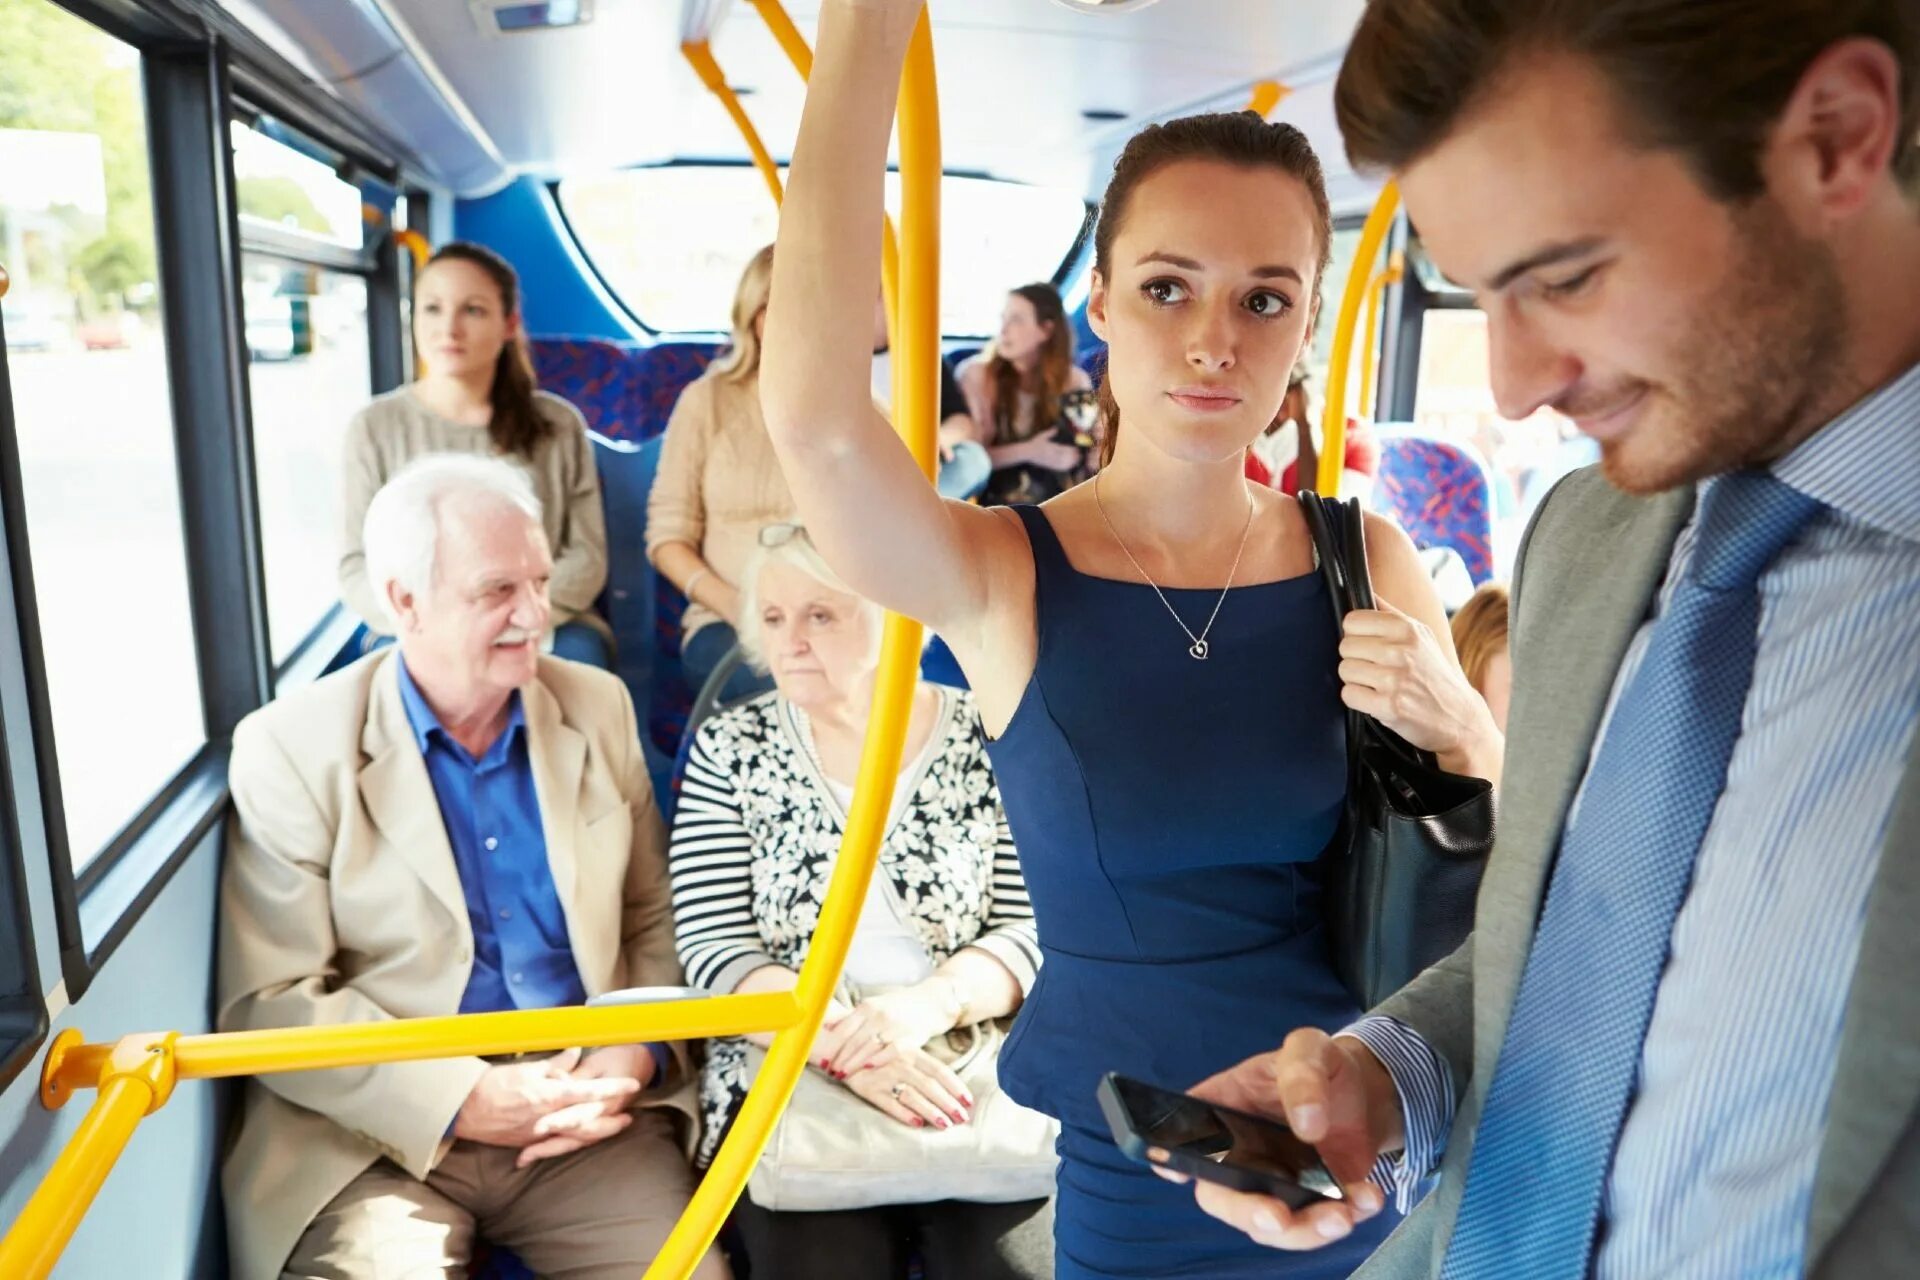 Ситуация в общественном транспорте. Люди в транспорте. Люди в автобусе. D общественнv транспорт. Пассажиры общественного транспорта.